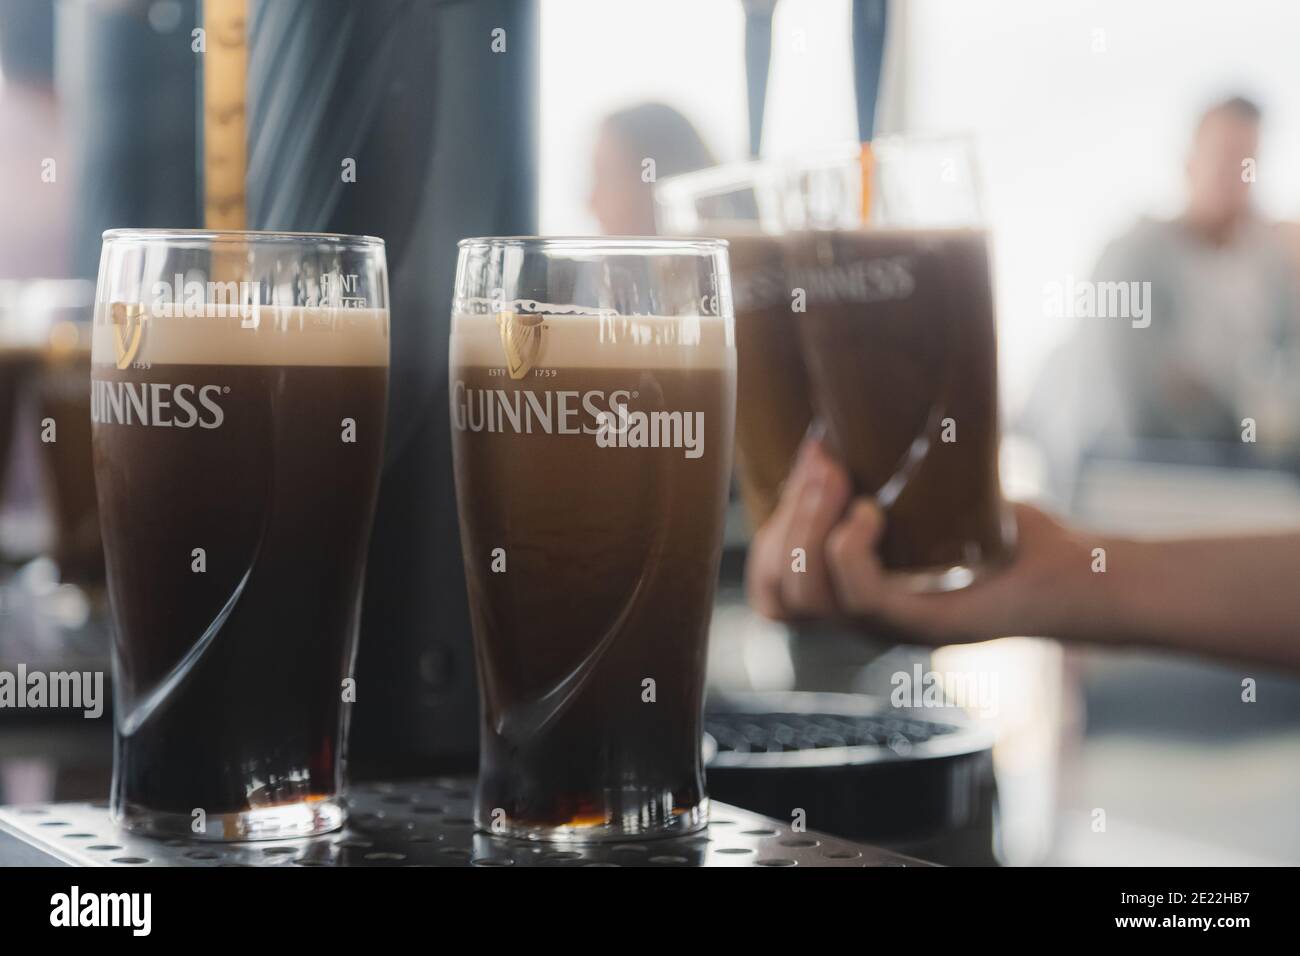 Dublino, Irlanda - Settembre 12 2016: Pinte di Guinness appena versate, il famoso stout secco irlandese presso la Guinness Storehouse di Dublino, Irlanda. Foto Stock